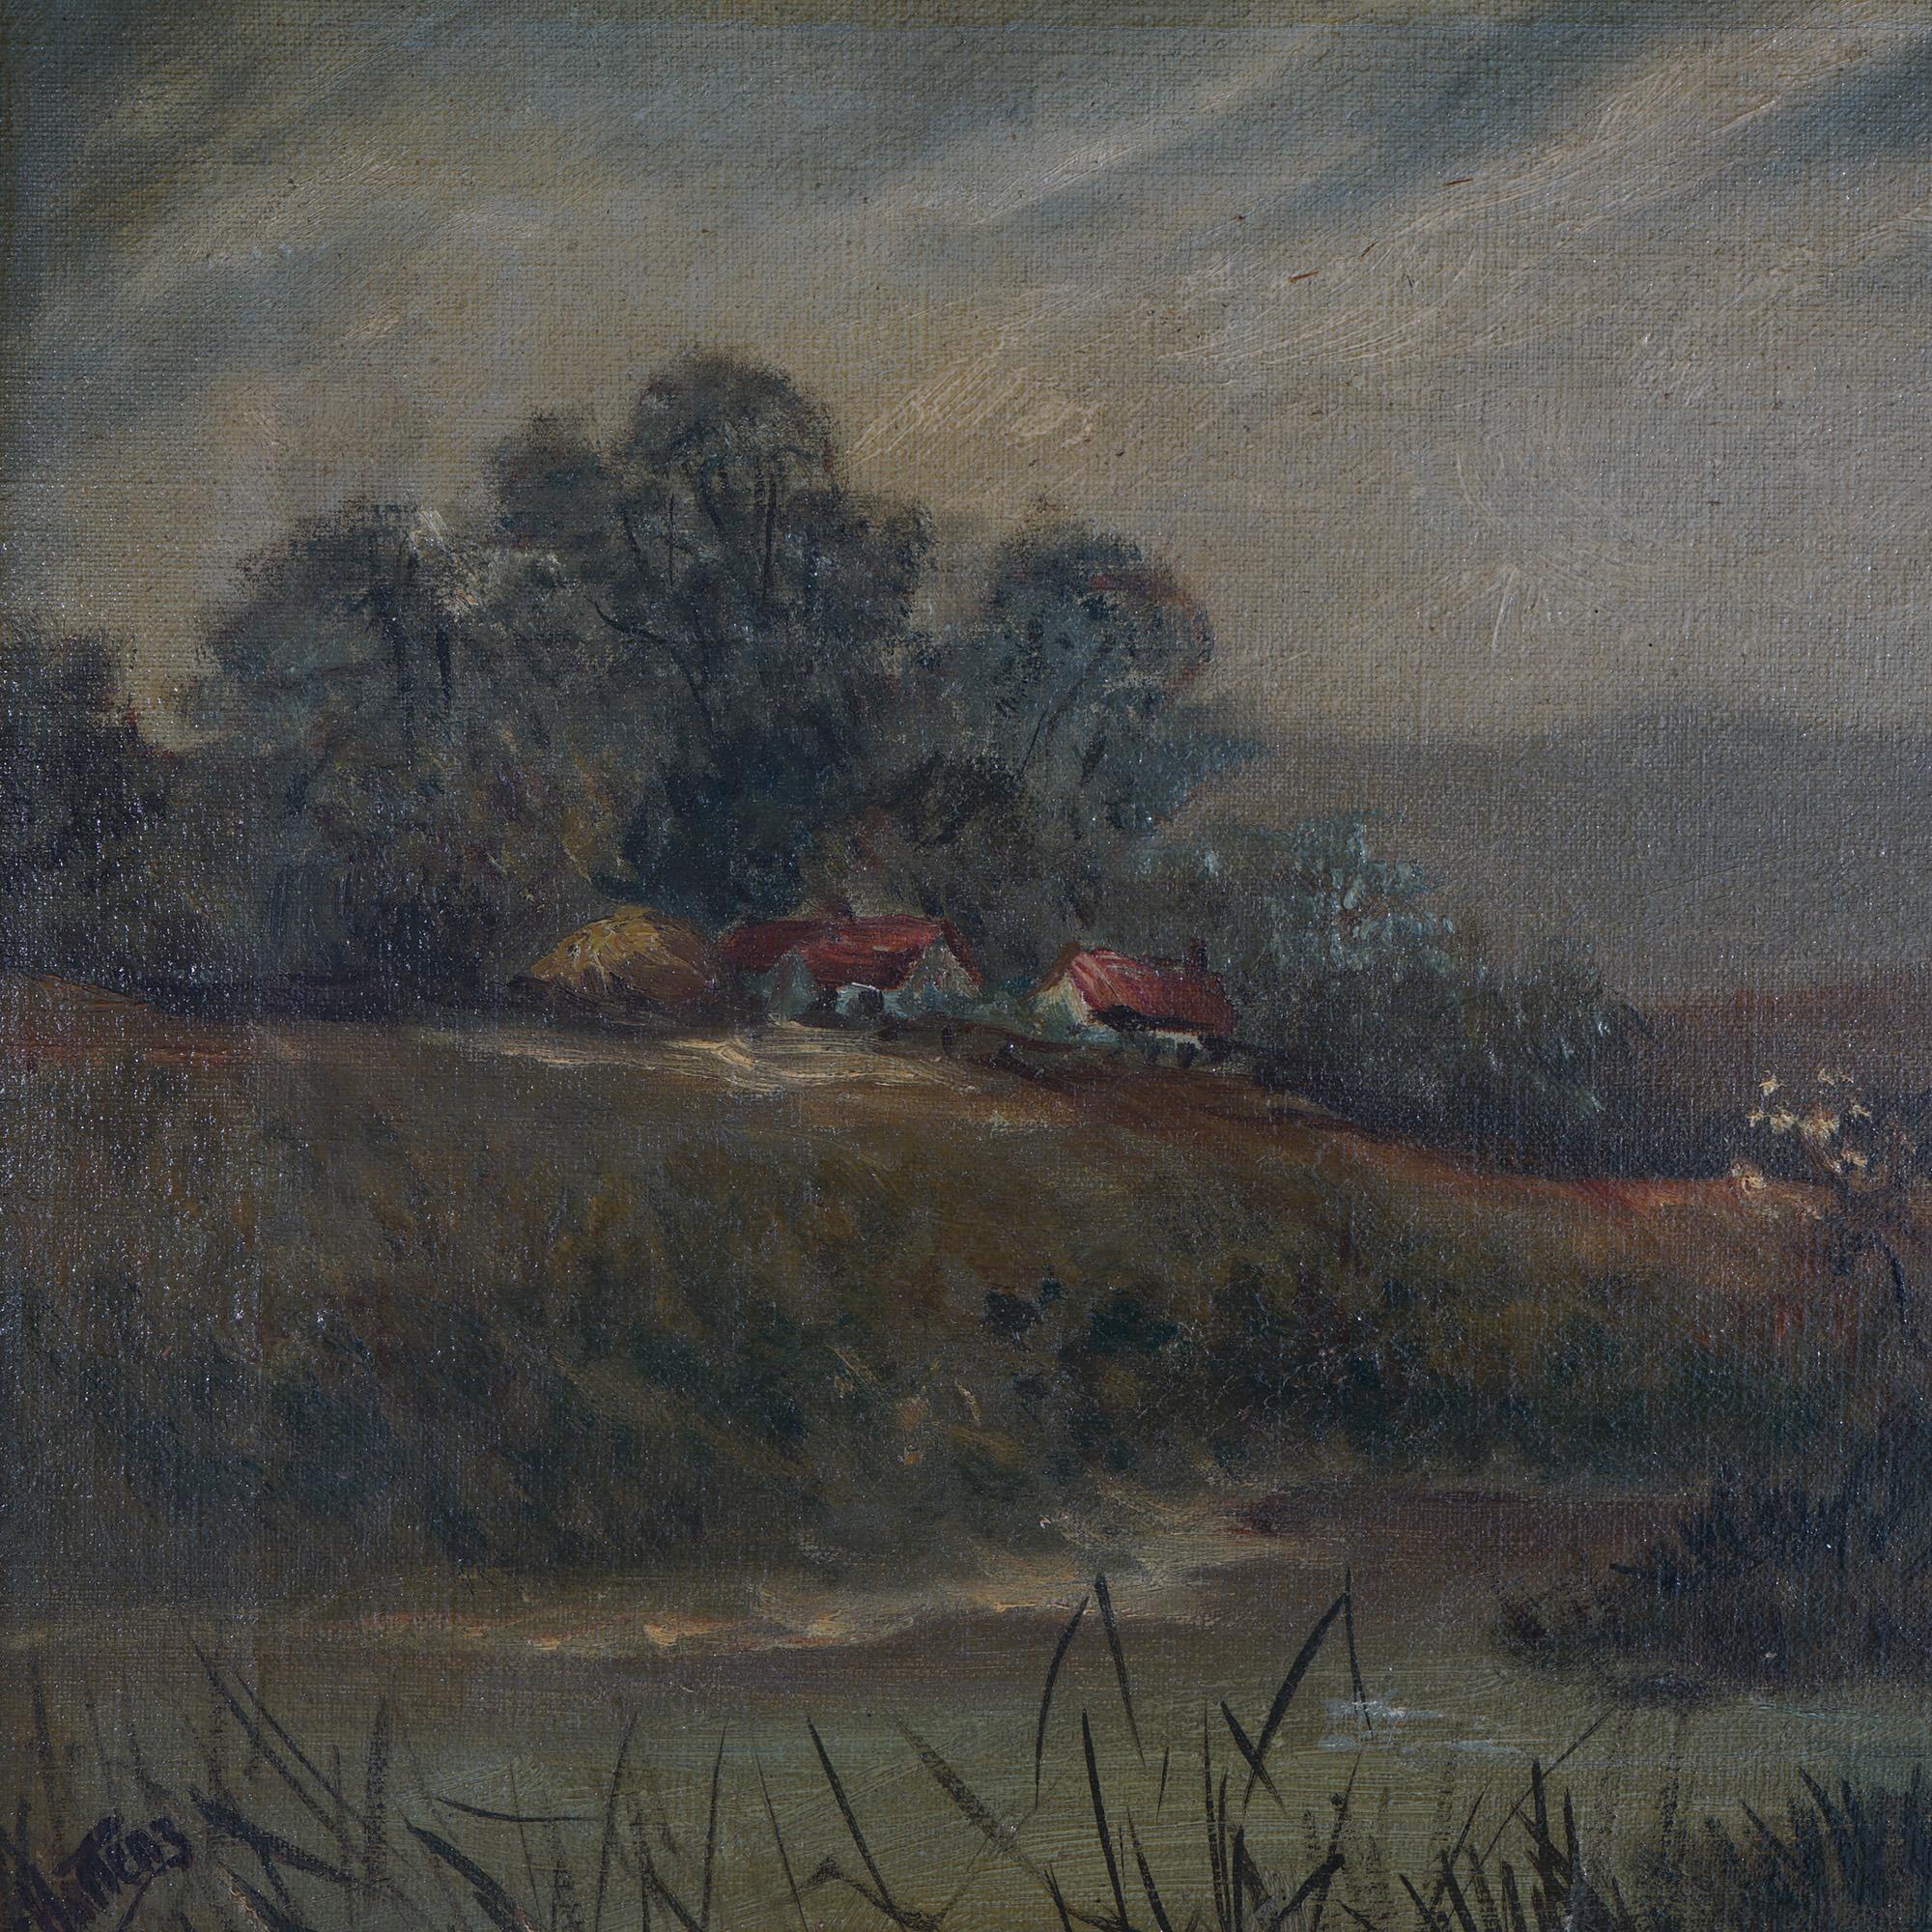 Chatten Oil on Canvas Landscape of Rural Village Scene with Figures, Giltwood Framed, C1890

Measures - 12